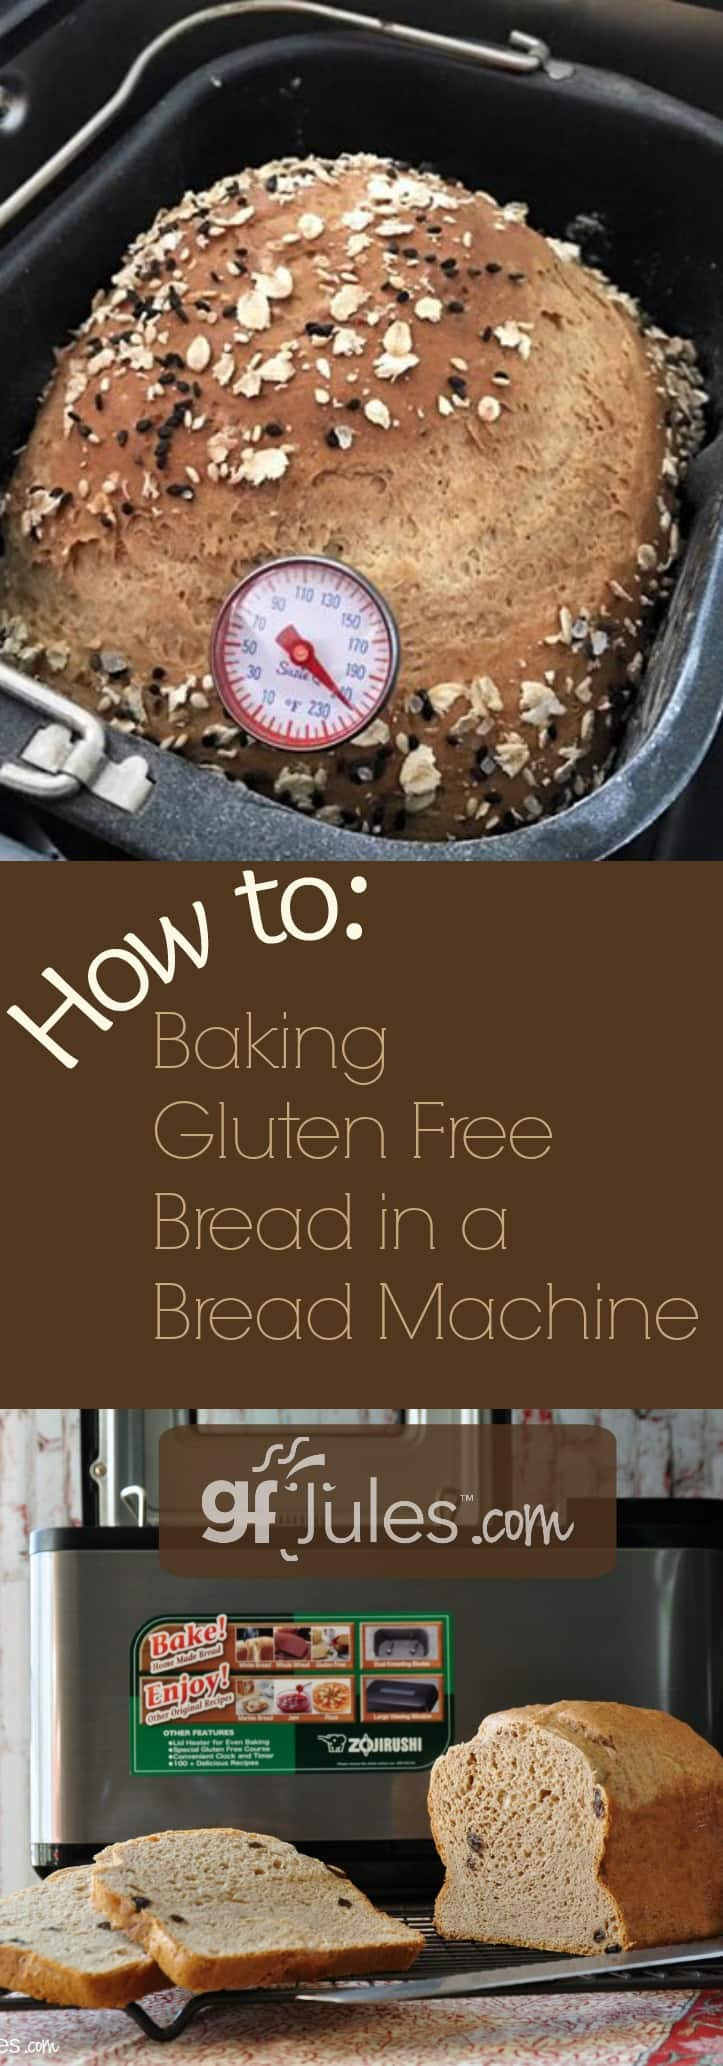 Gluten Free Bread Maker
 Baking Gluten Free Bread in a Breadmaker